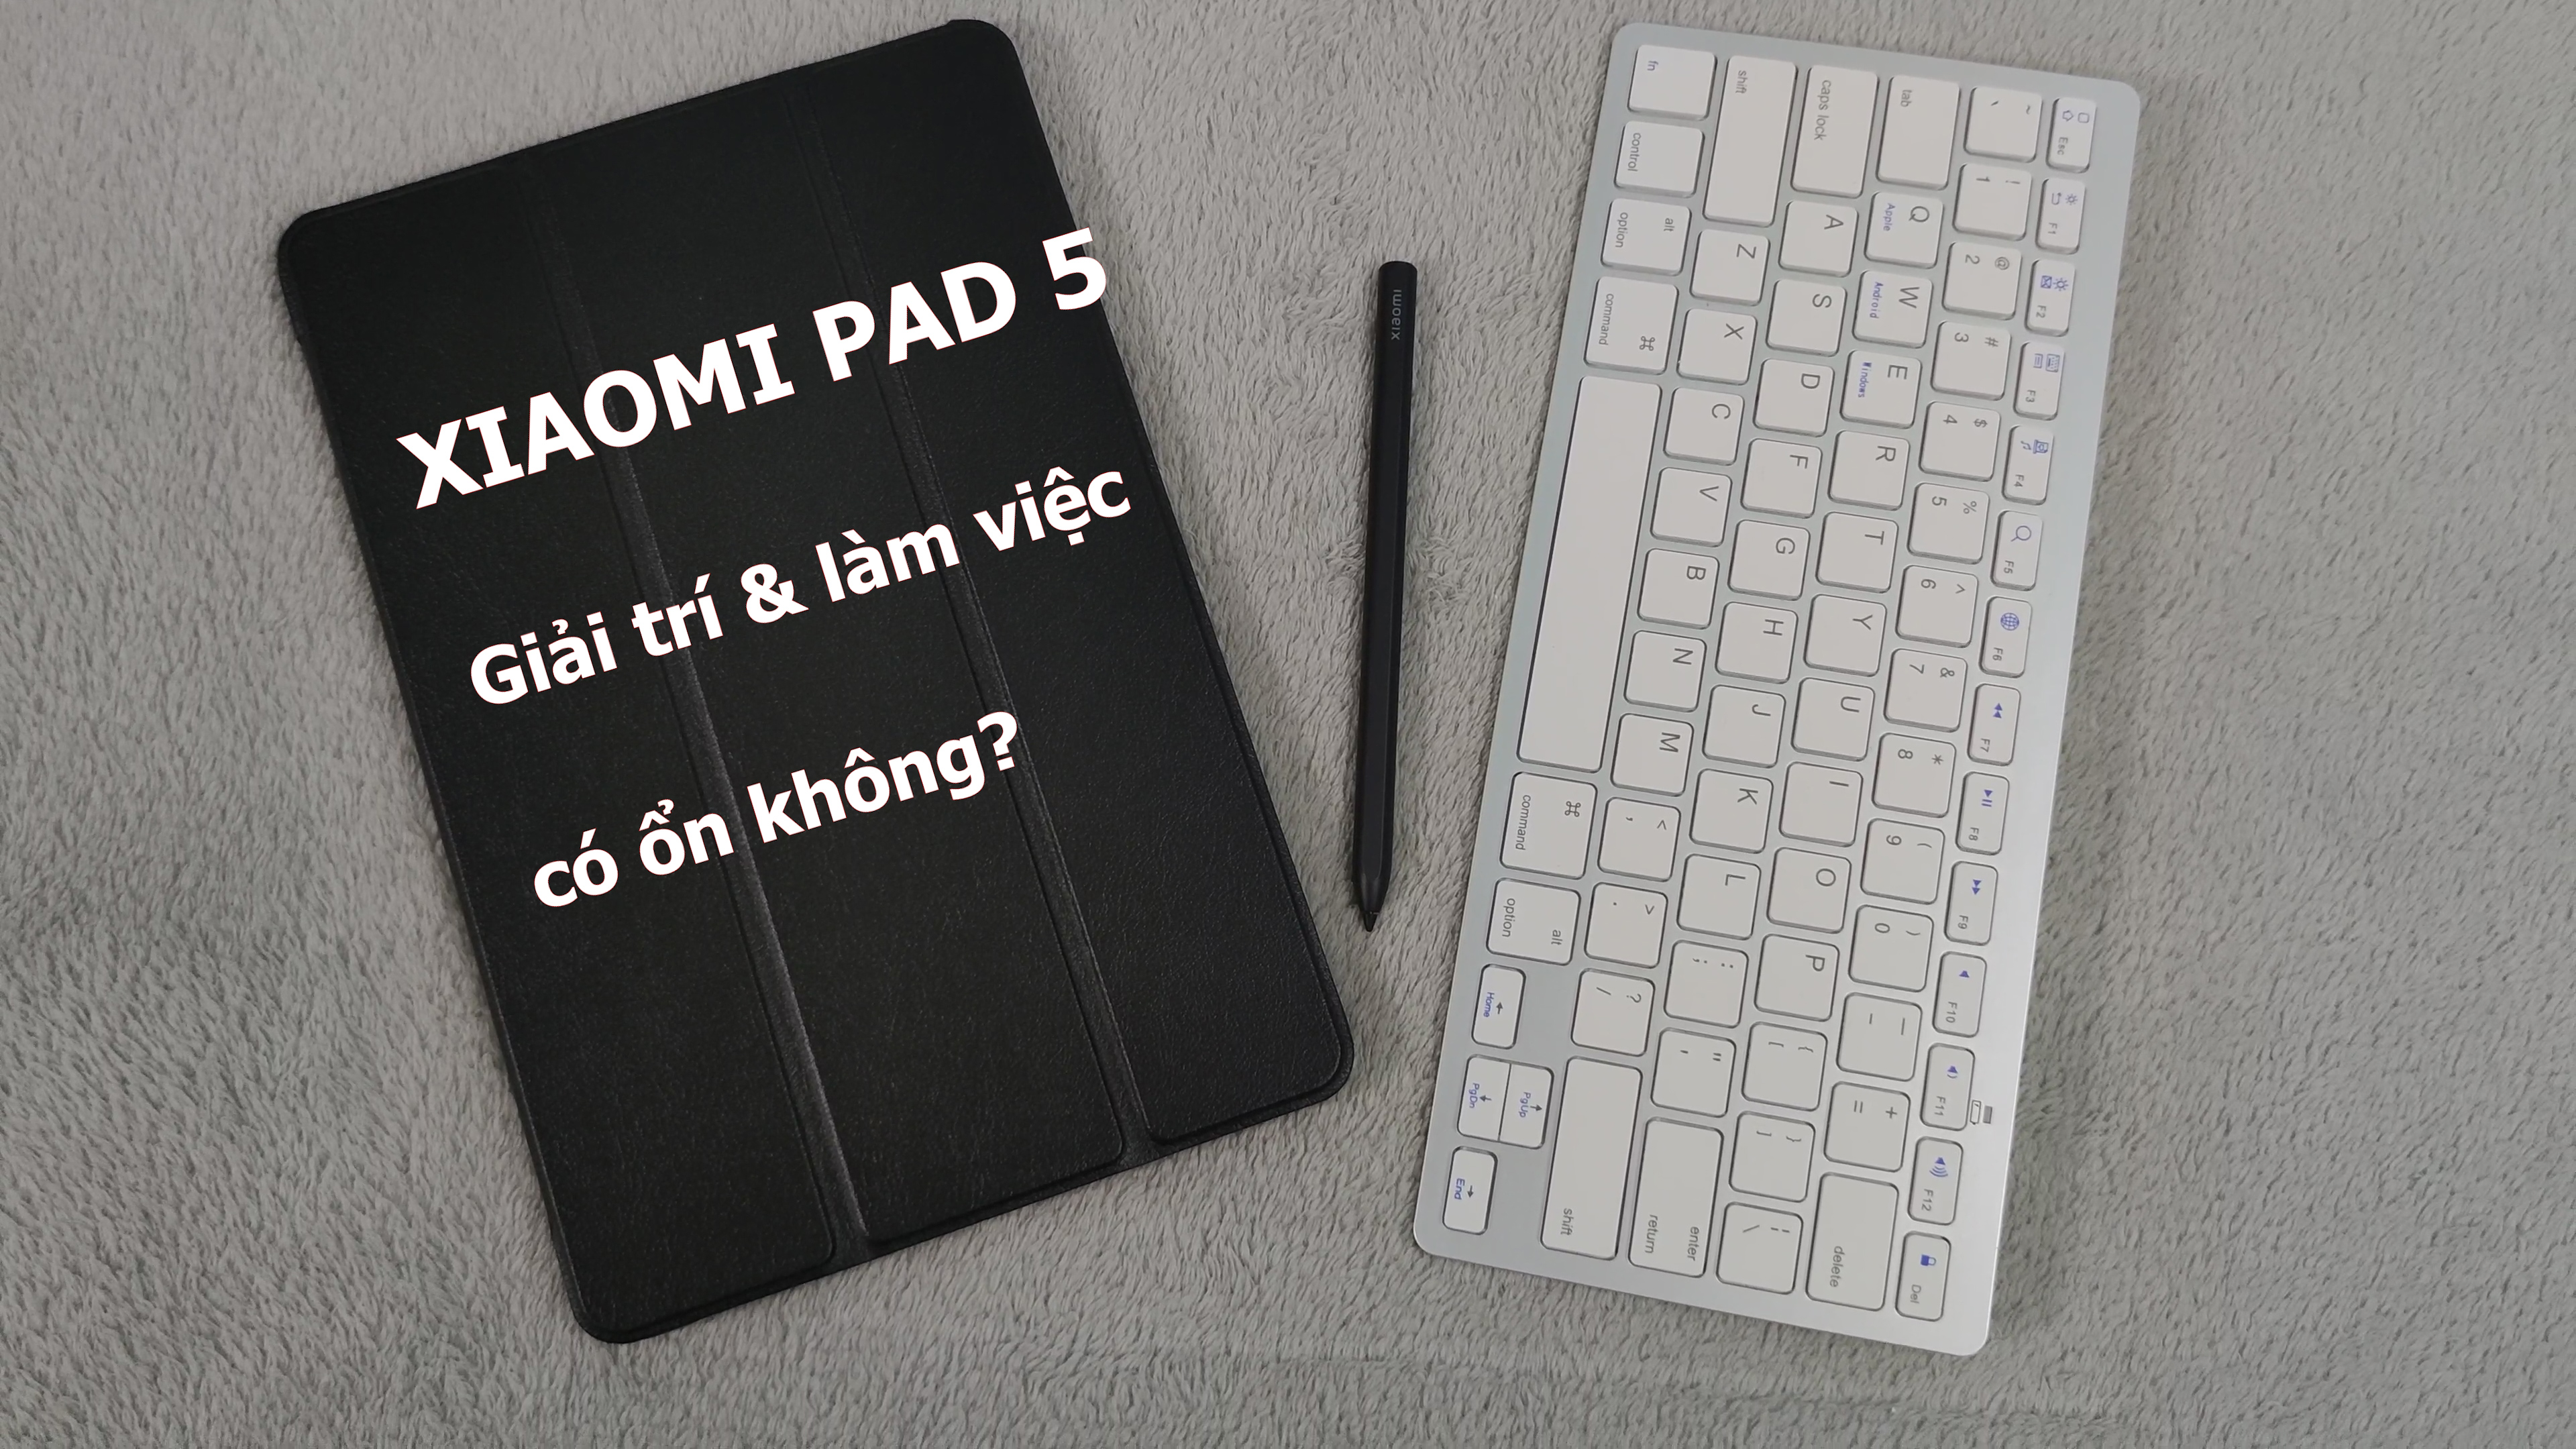 Xiaomi pad 5 + stylus pen: combo đủ dùng cho giải trí và dạy - học online